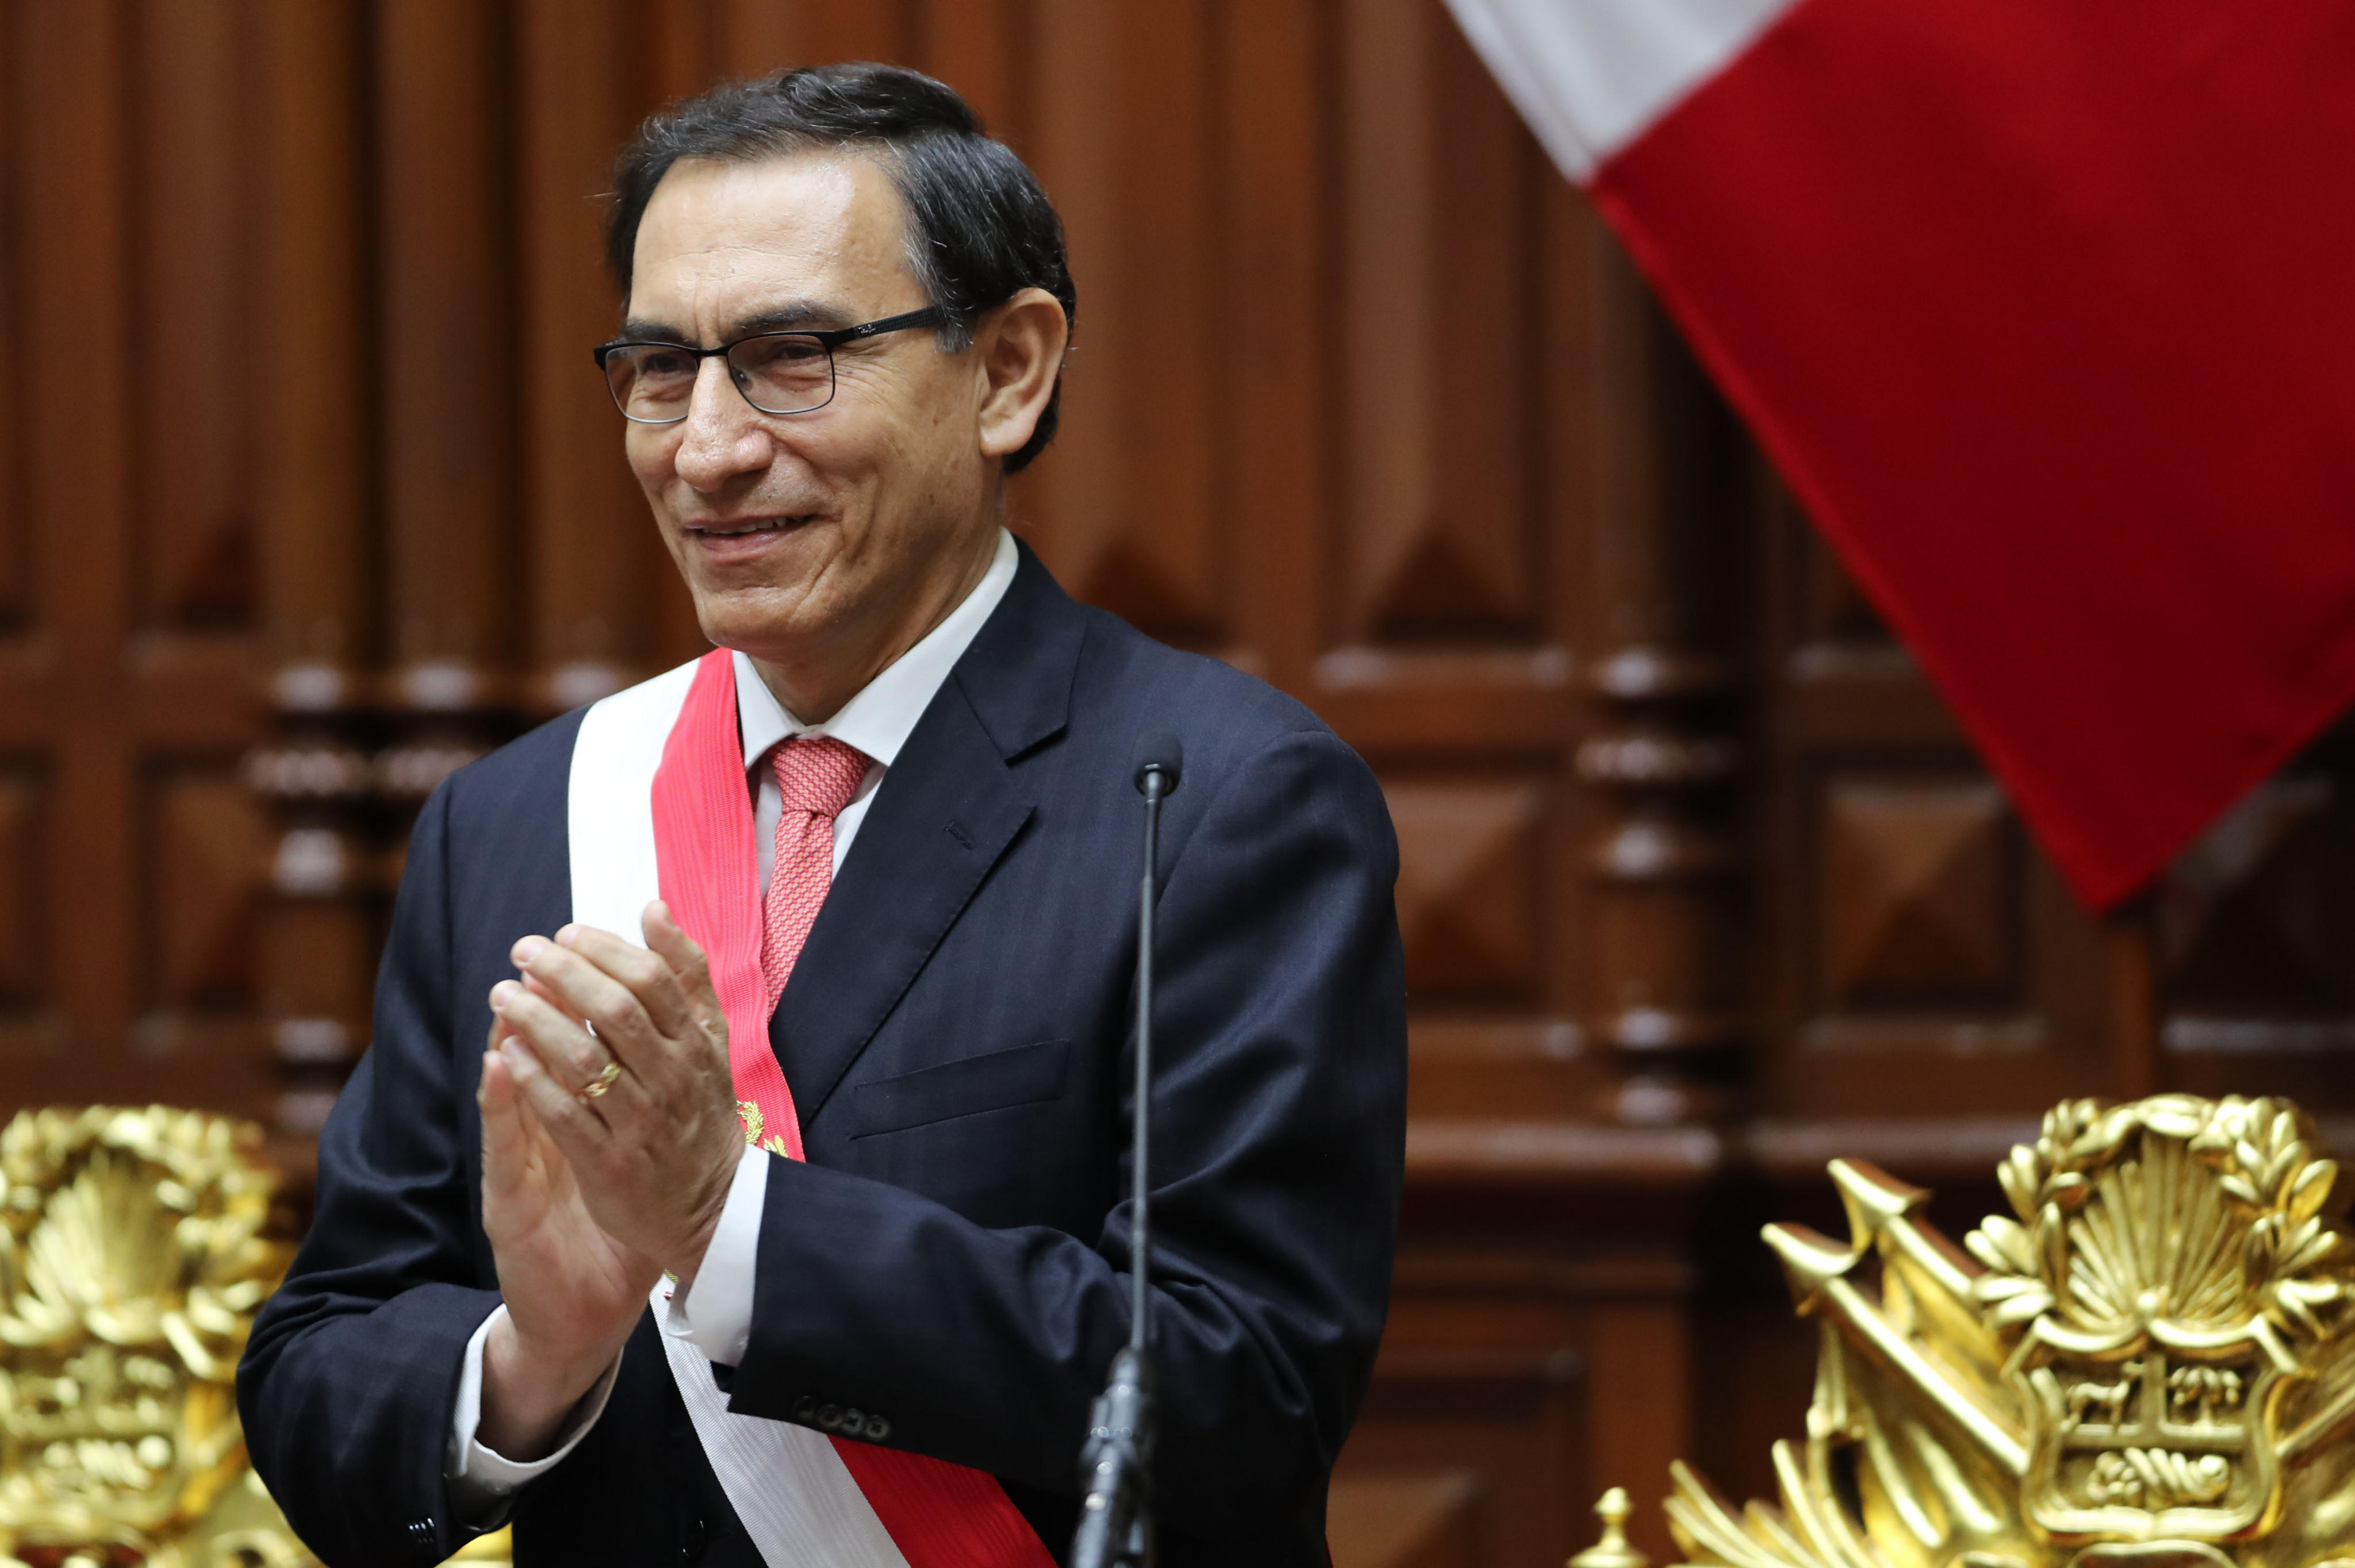 Martín Vizcarra, de político poco conocido a presidente de Perú